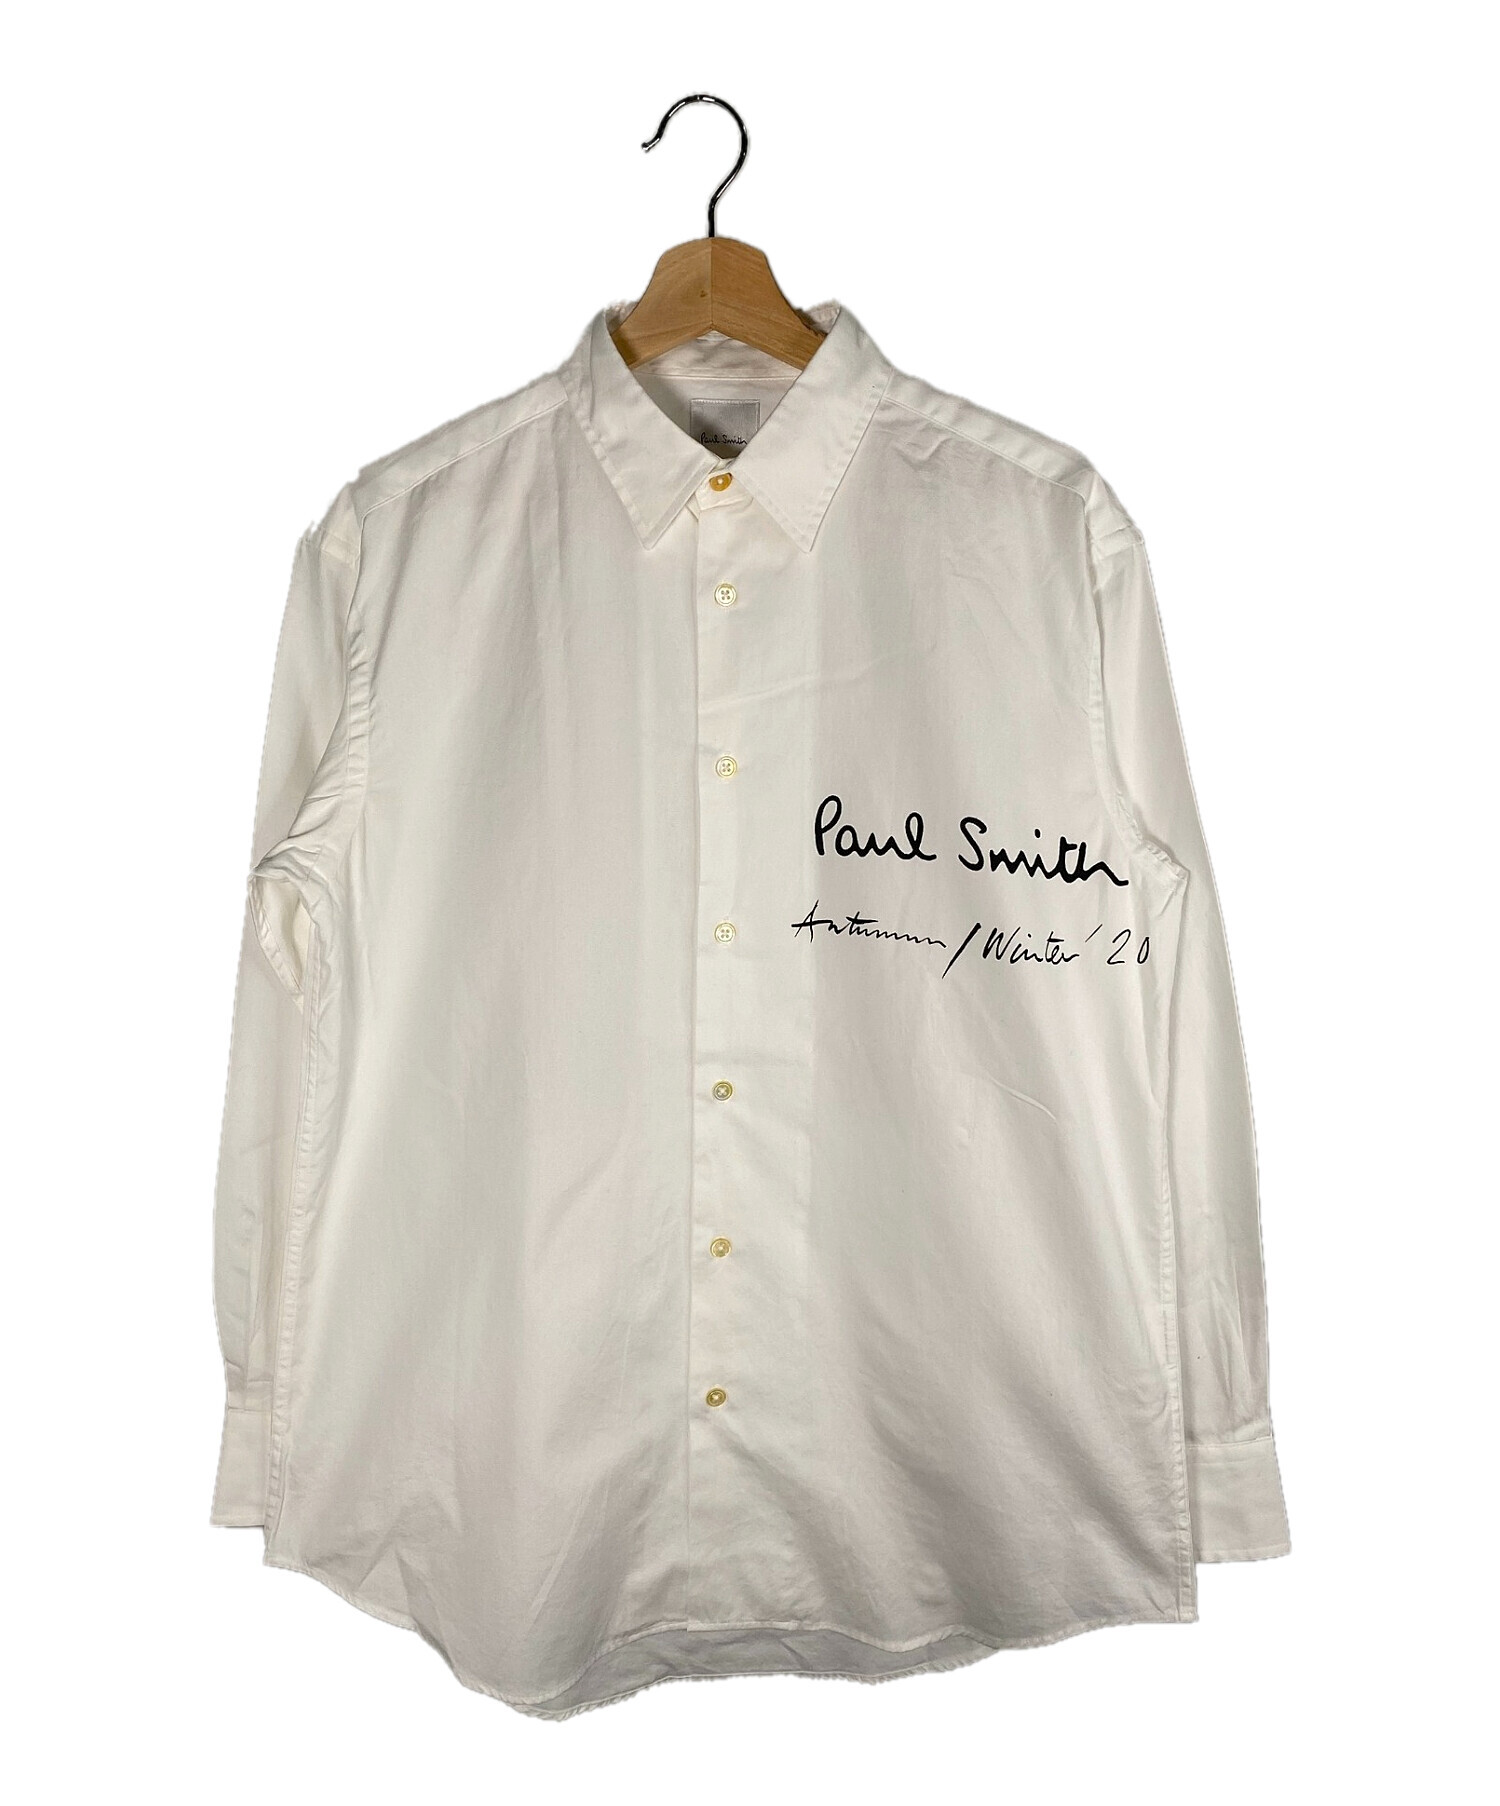 PAUL SMITH (ポールスミス) ロゴプリントシャツ ホワイト サイズ:M